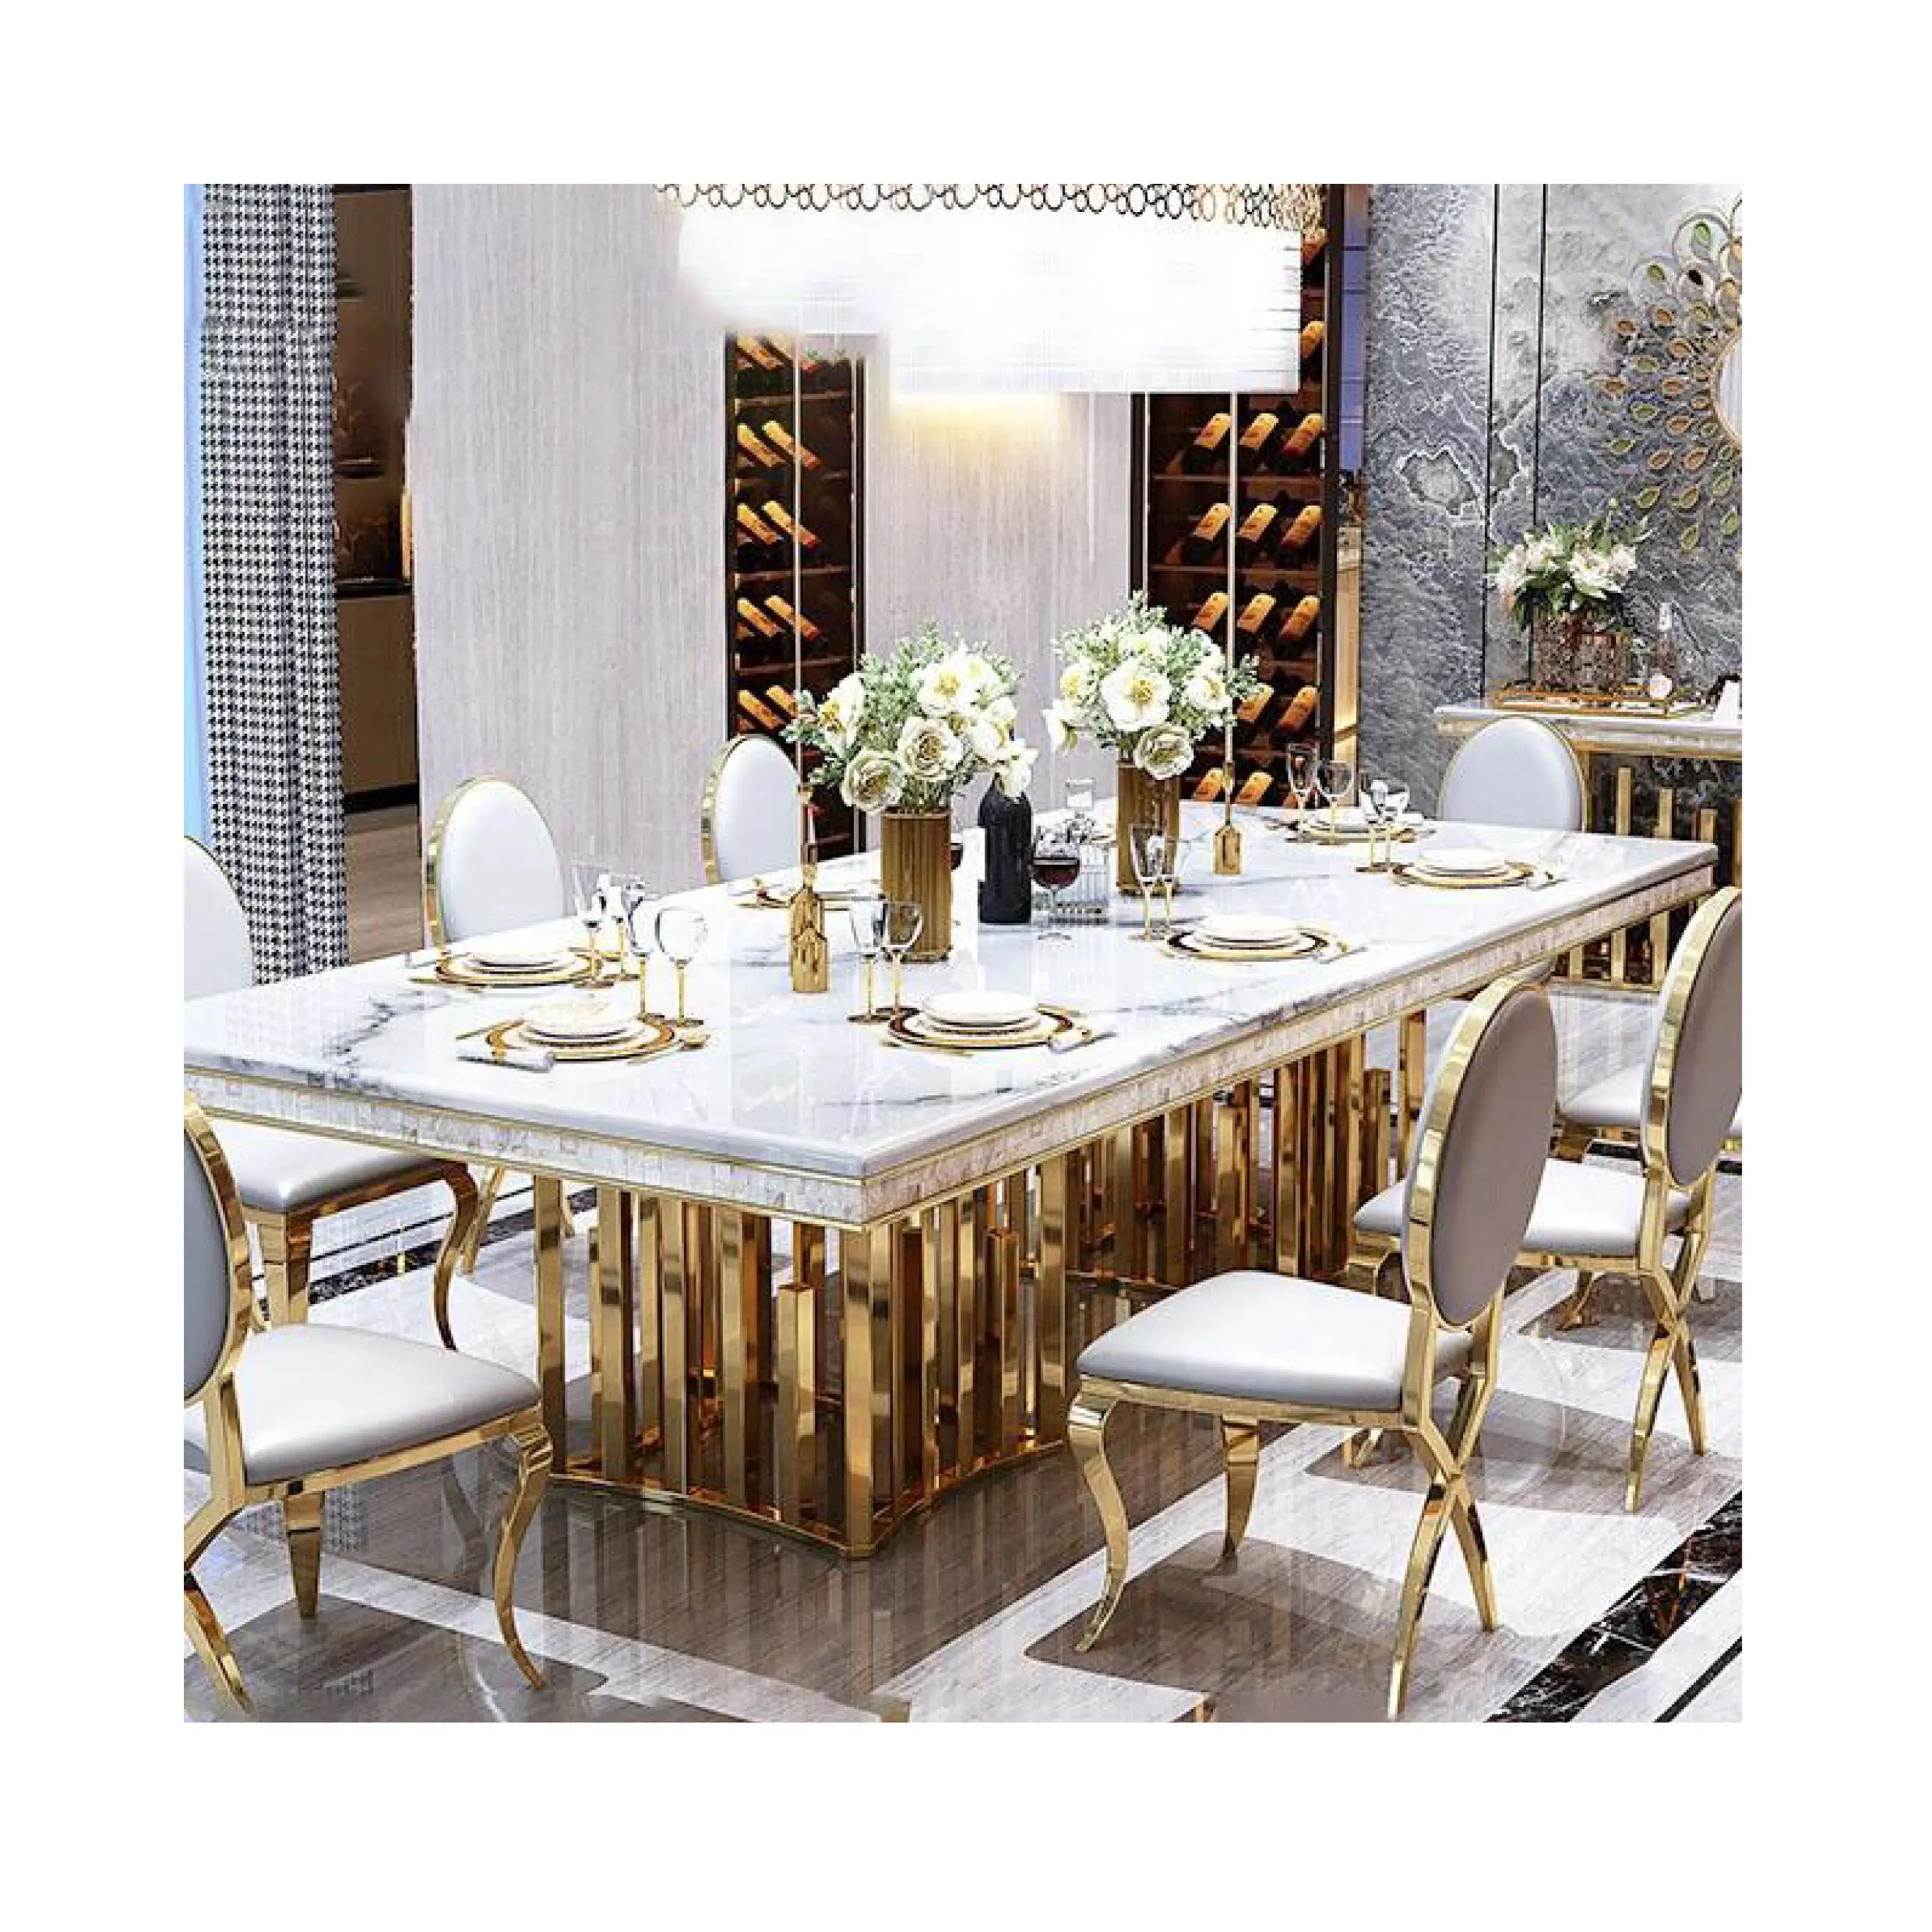 Set tavolo da pranzo con mobili per sala da pranzo con piano in marmo di promozione del nuovo prodotto